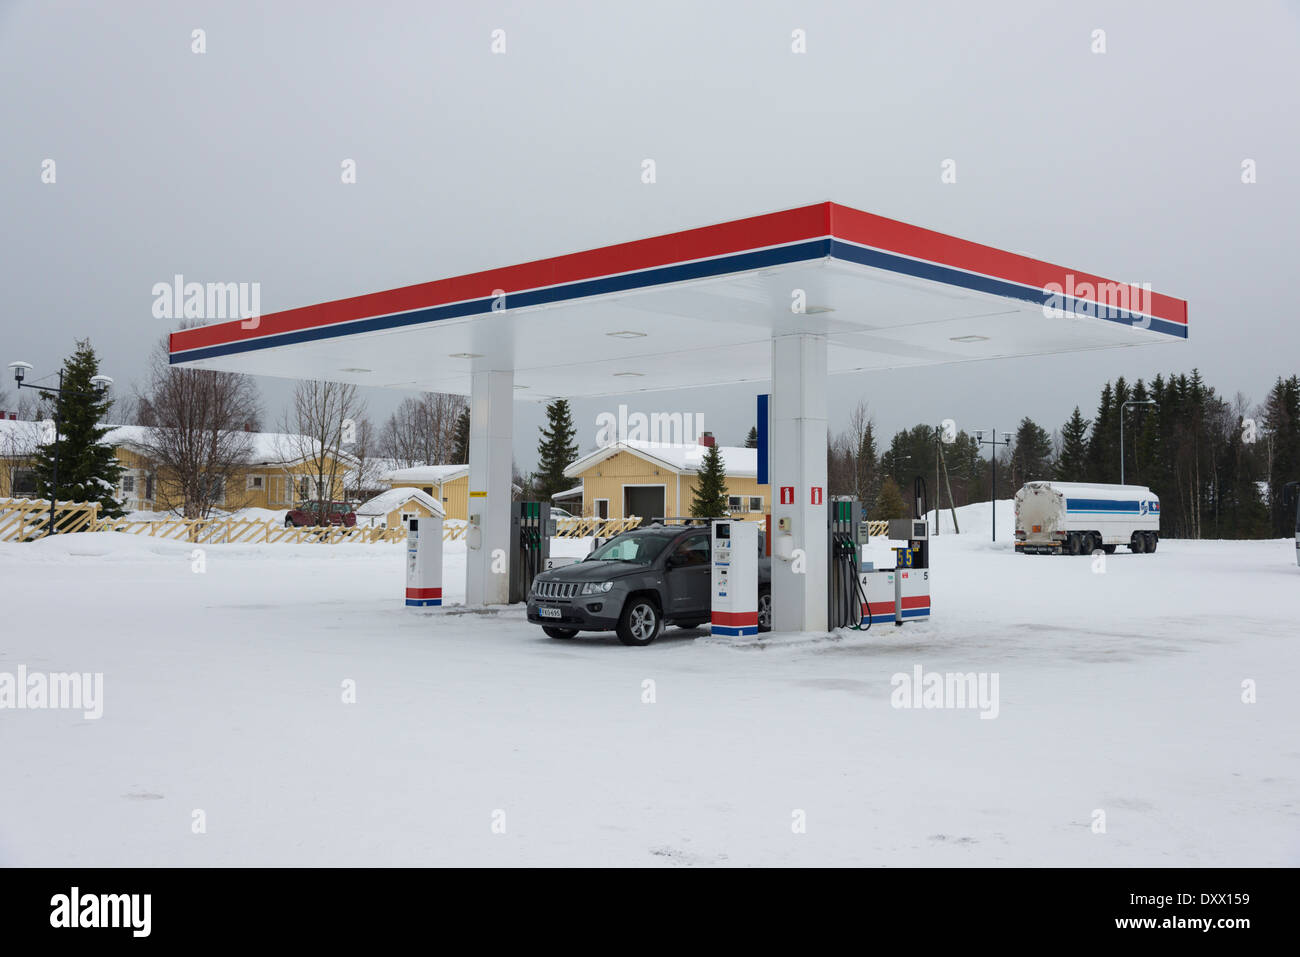 Benzin- oder im Winter mit Schnee auf dem Boden am Akaslompolo Yllas Lappland Finnland mit einem Auto tanken Tankstelle Stockfoto